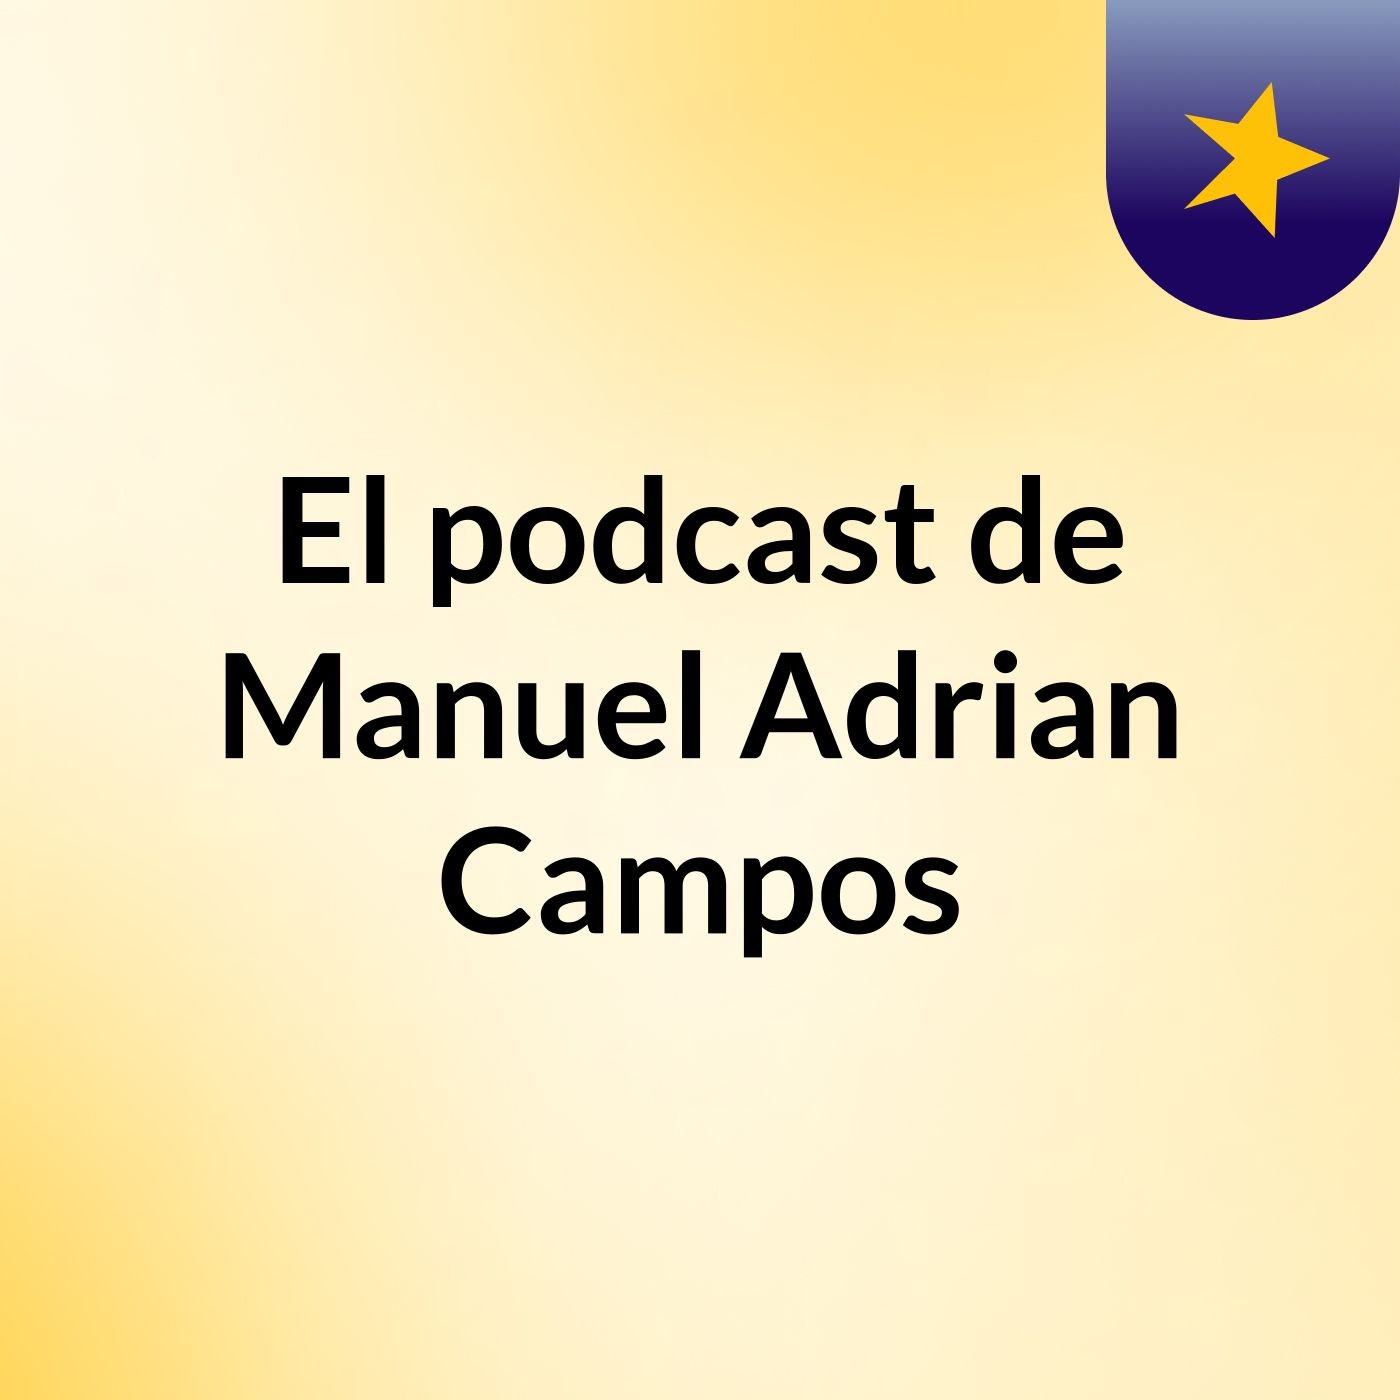 El podcast de Manuel Adrian Campos